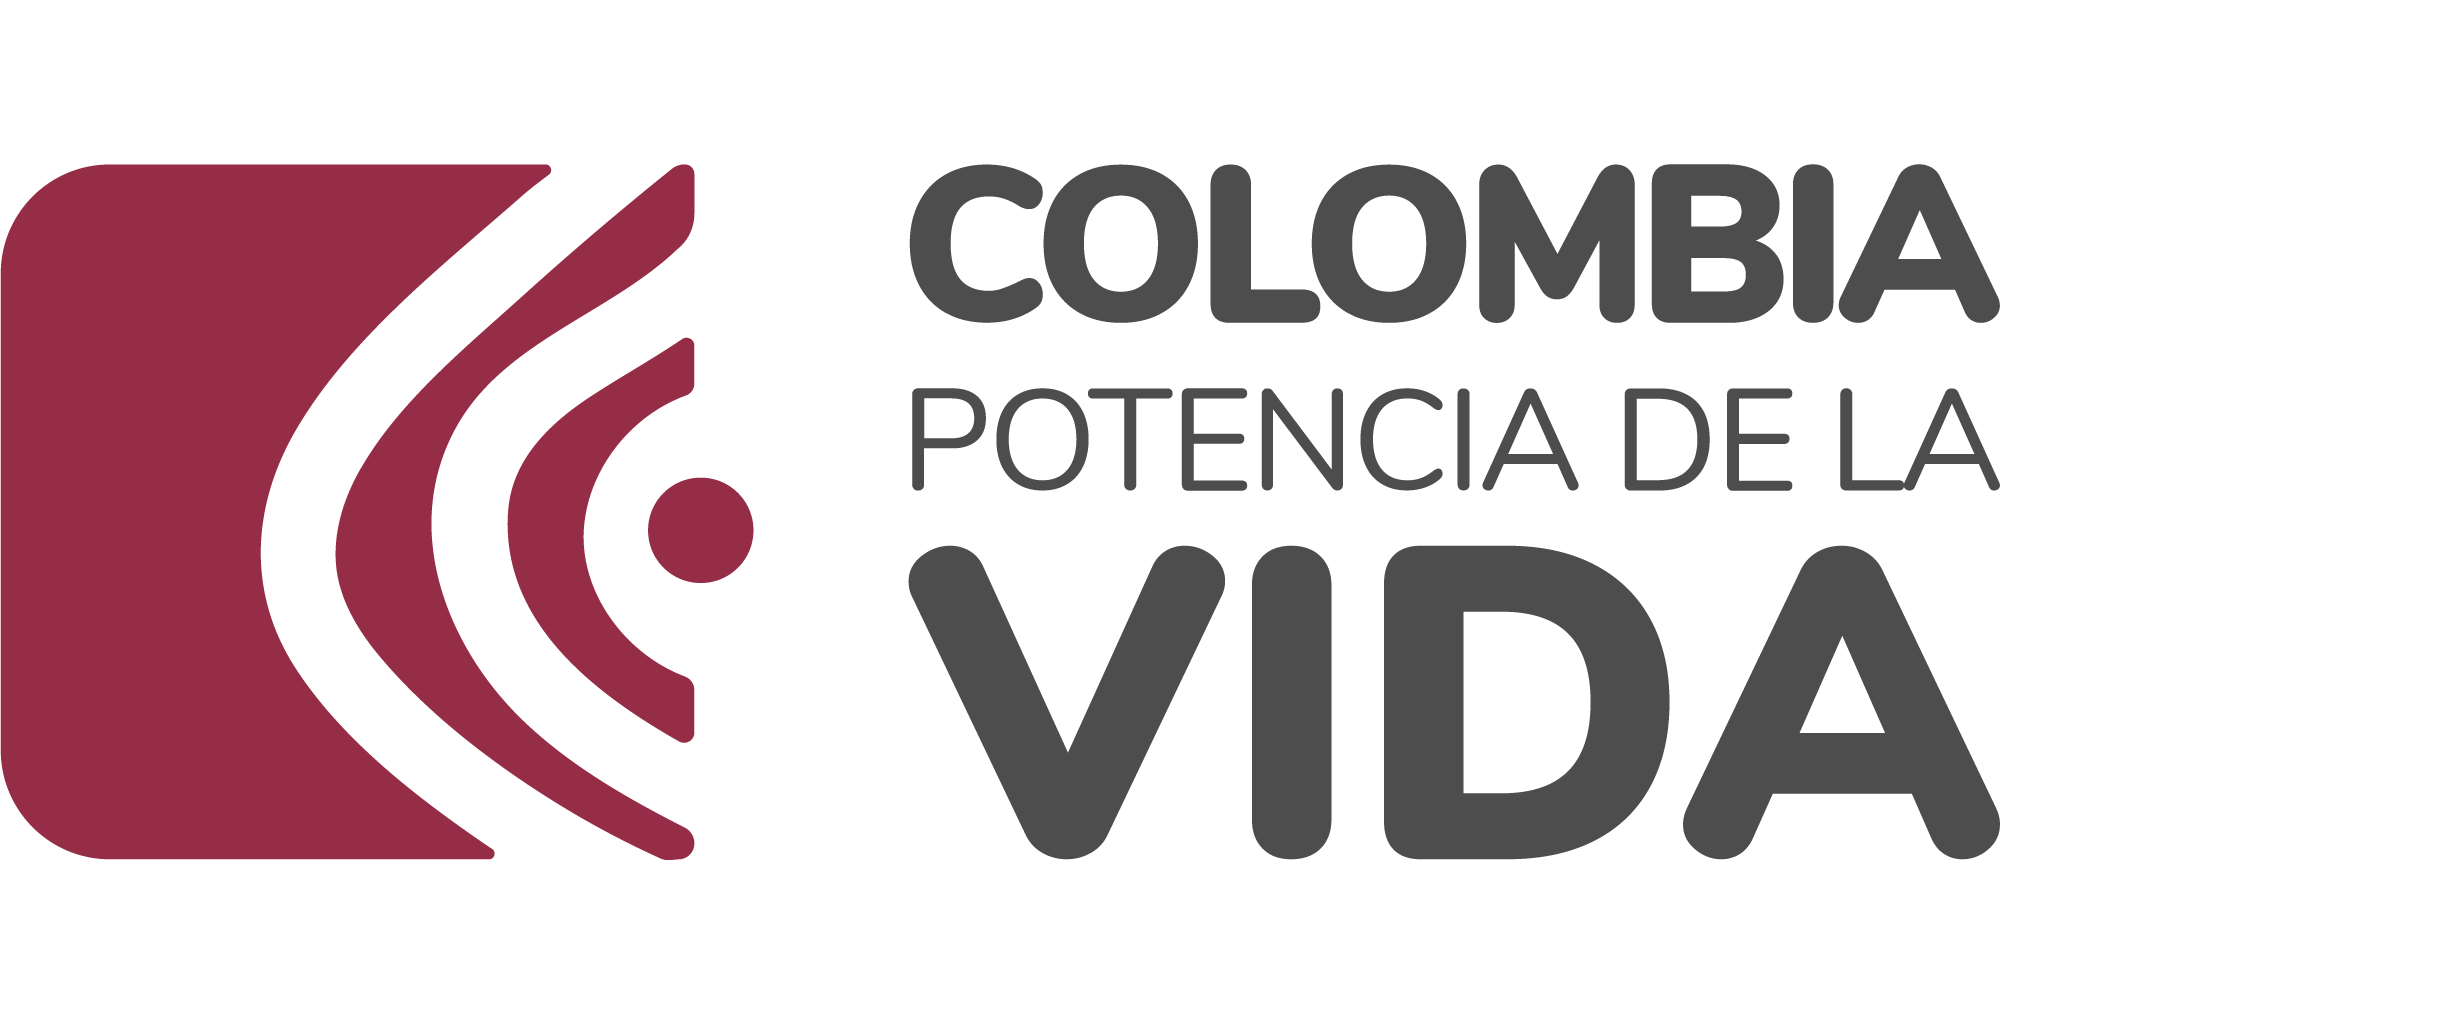 Logo Colombia potencia mundial de la vida